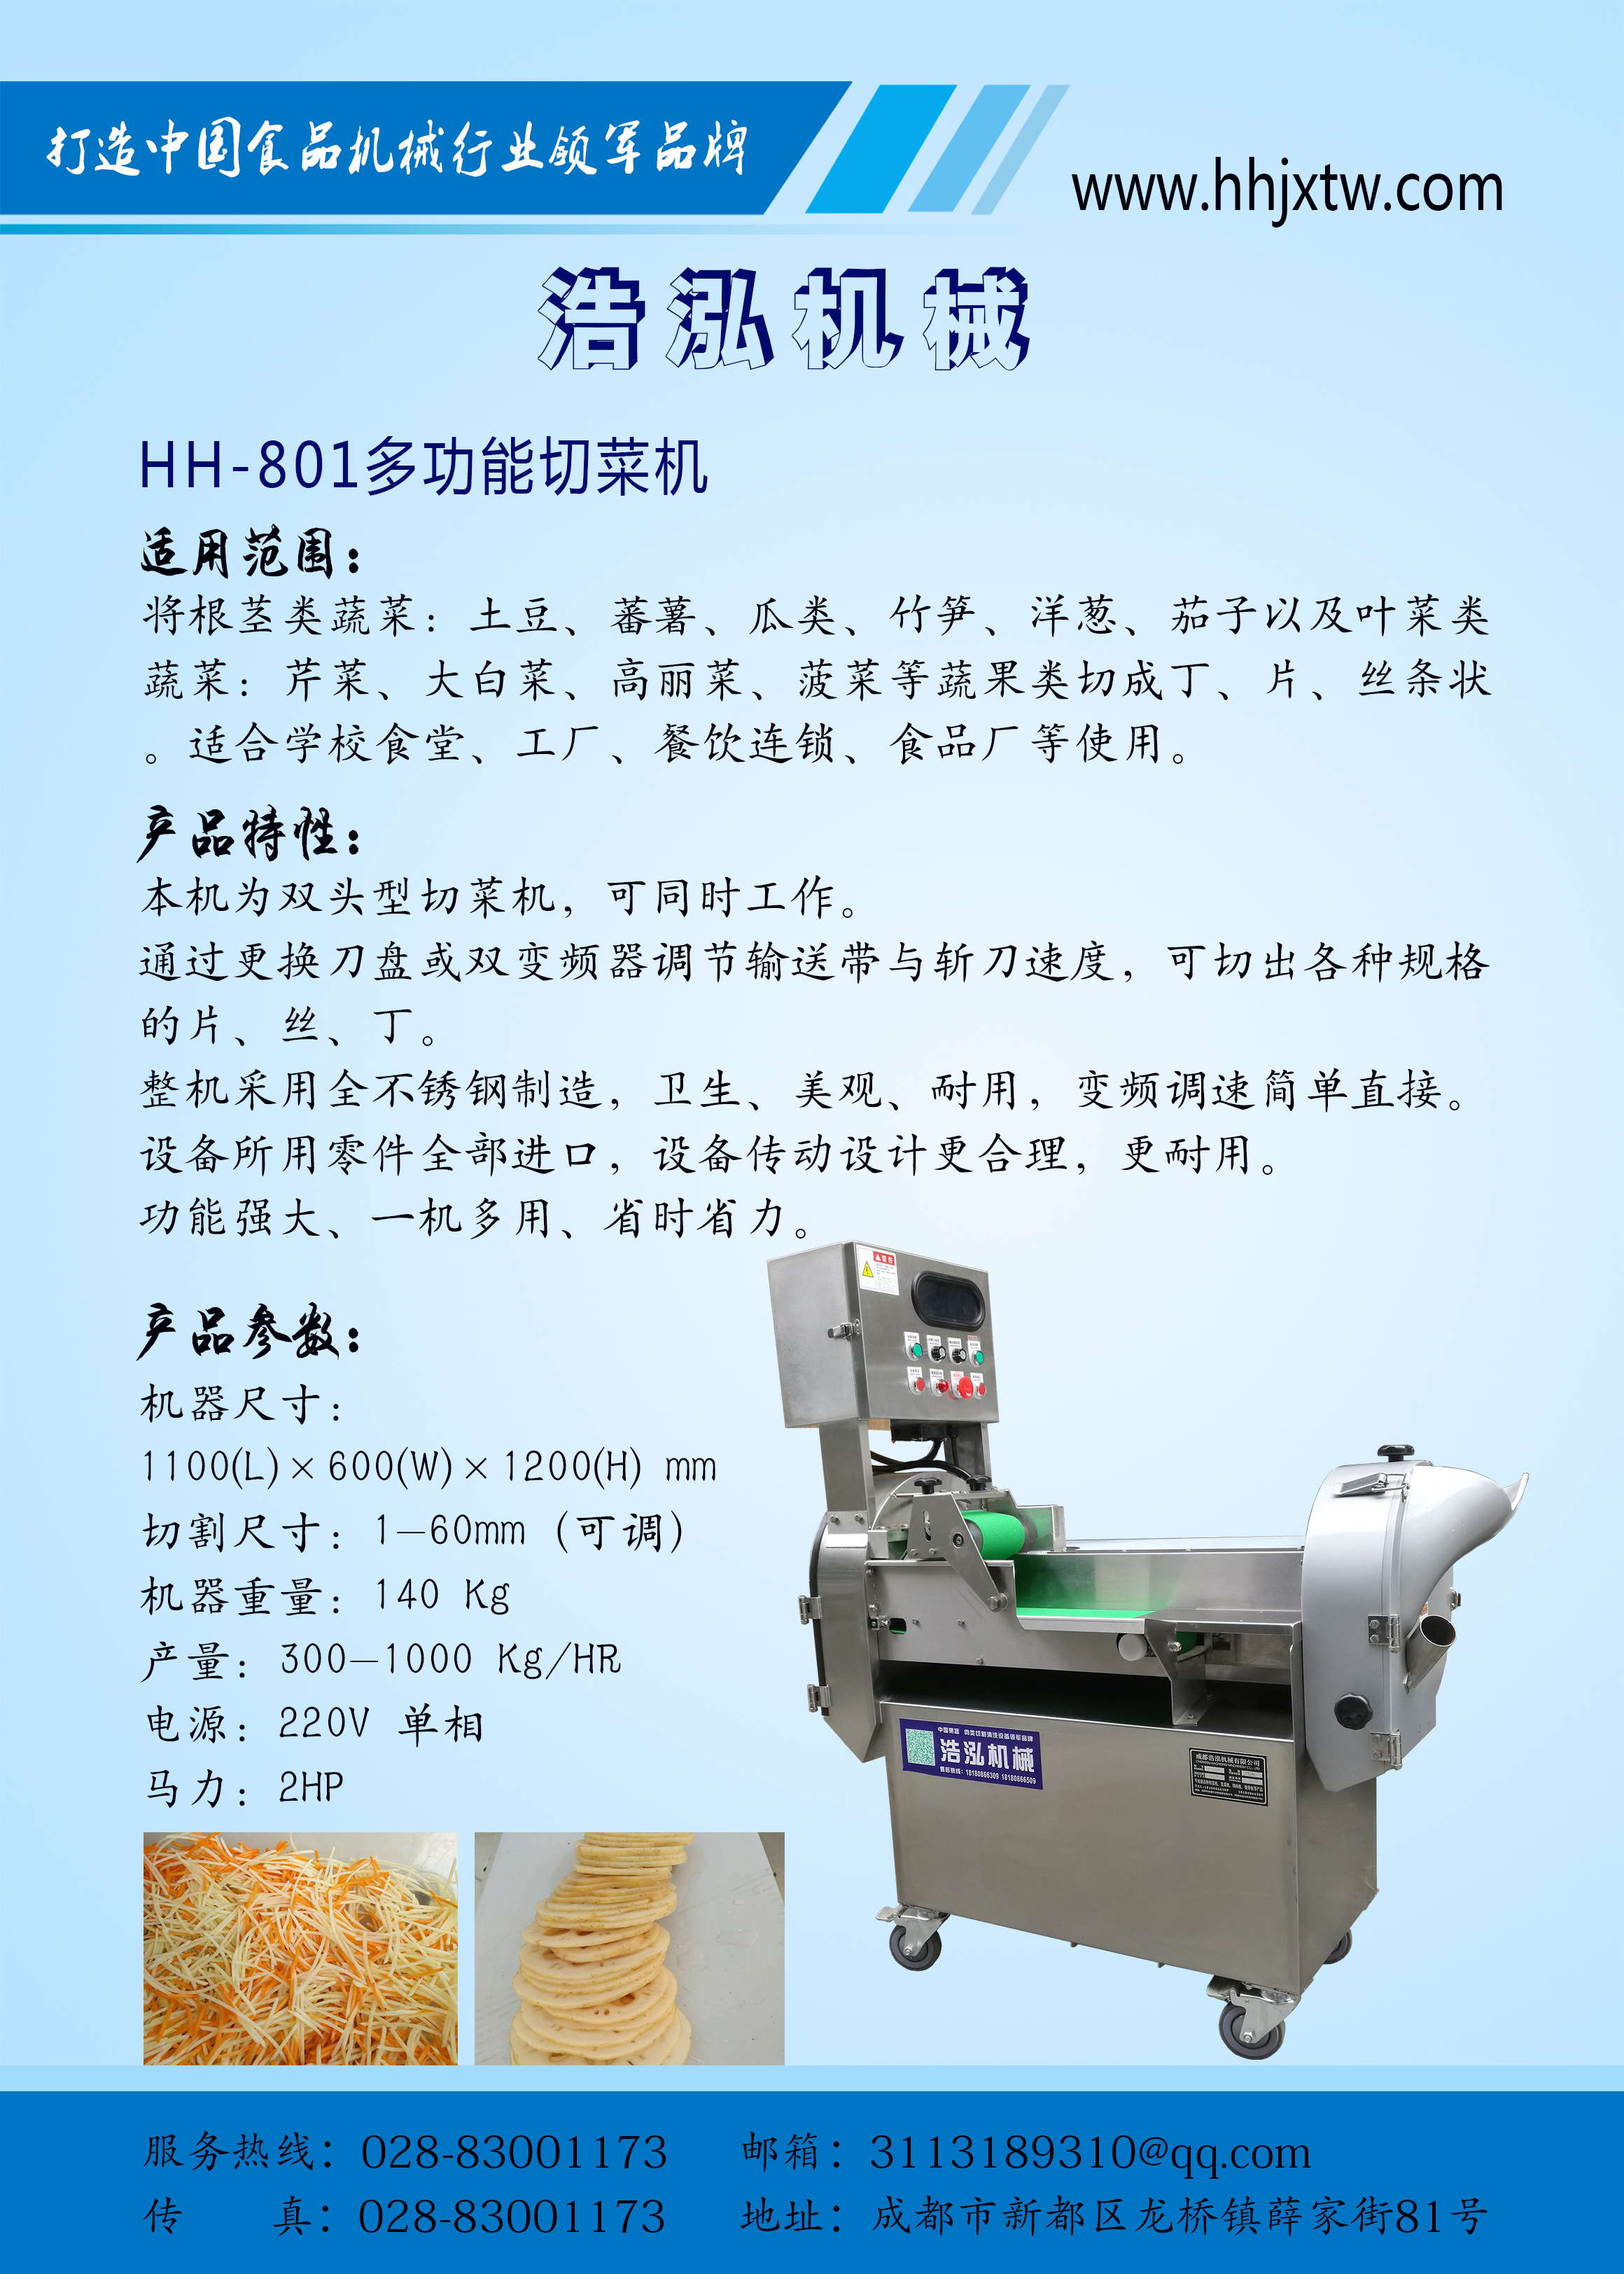 HH-801多功能切菜机